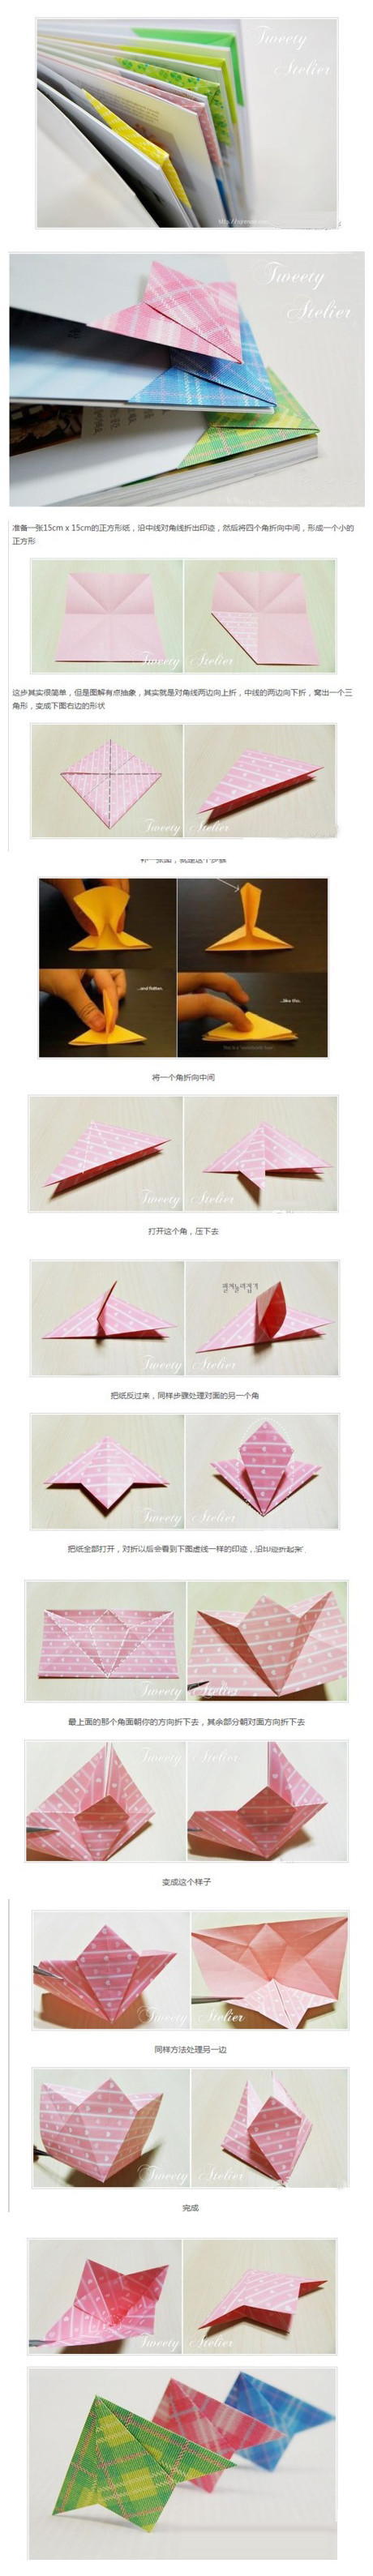 【折纸教程】折纸书签